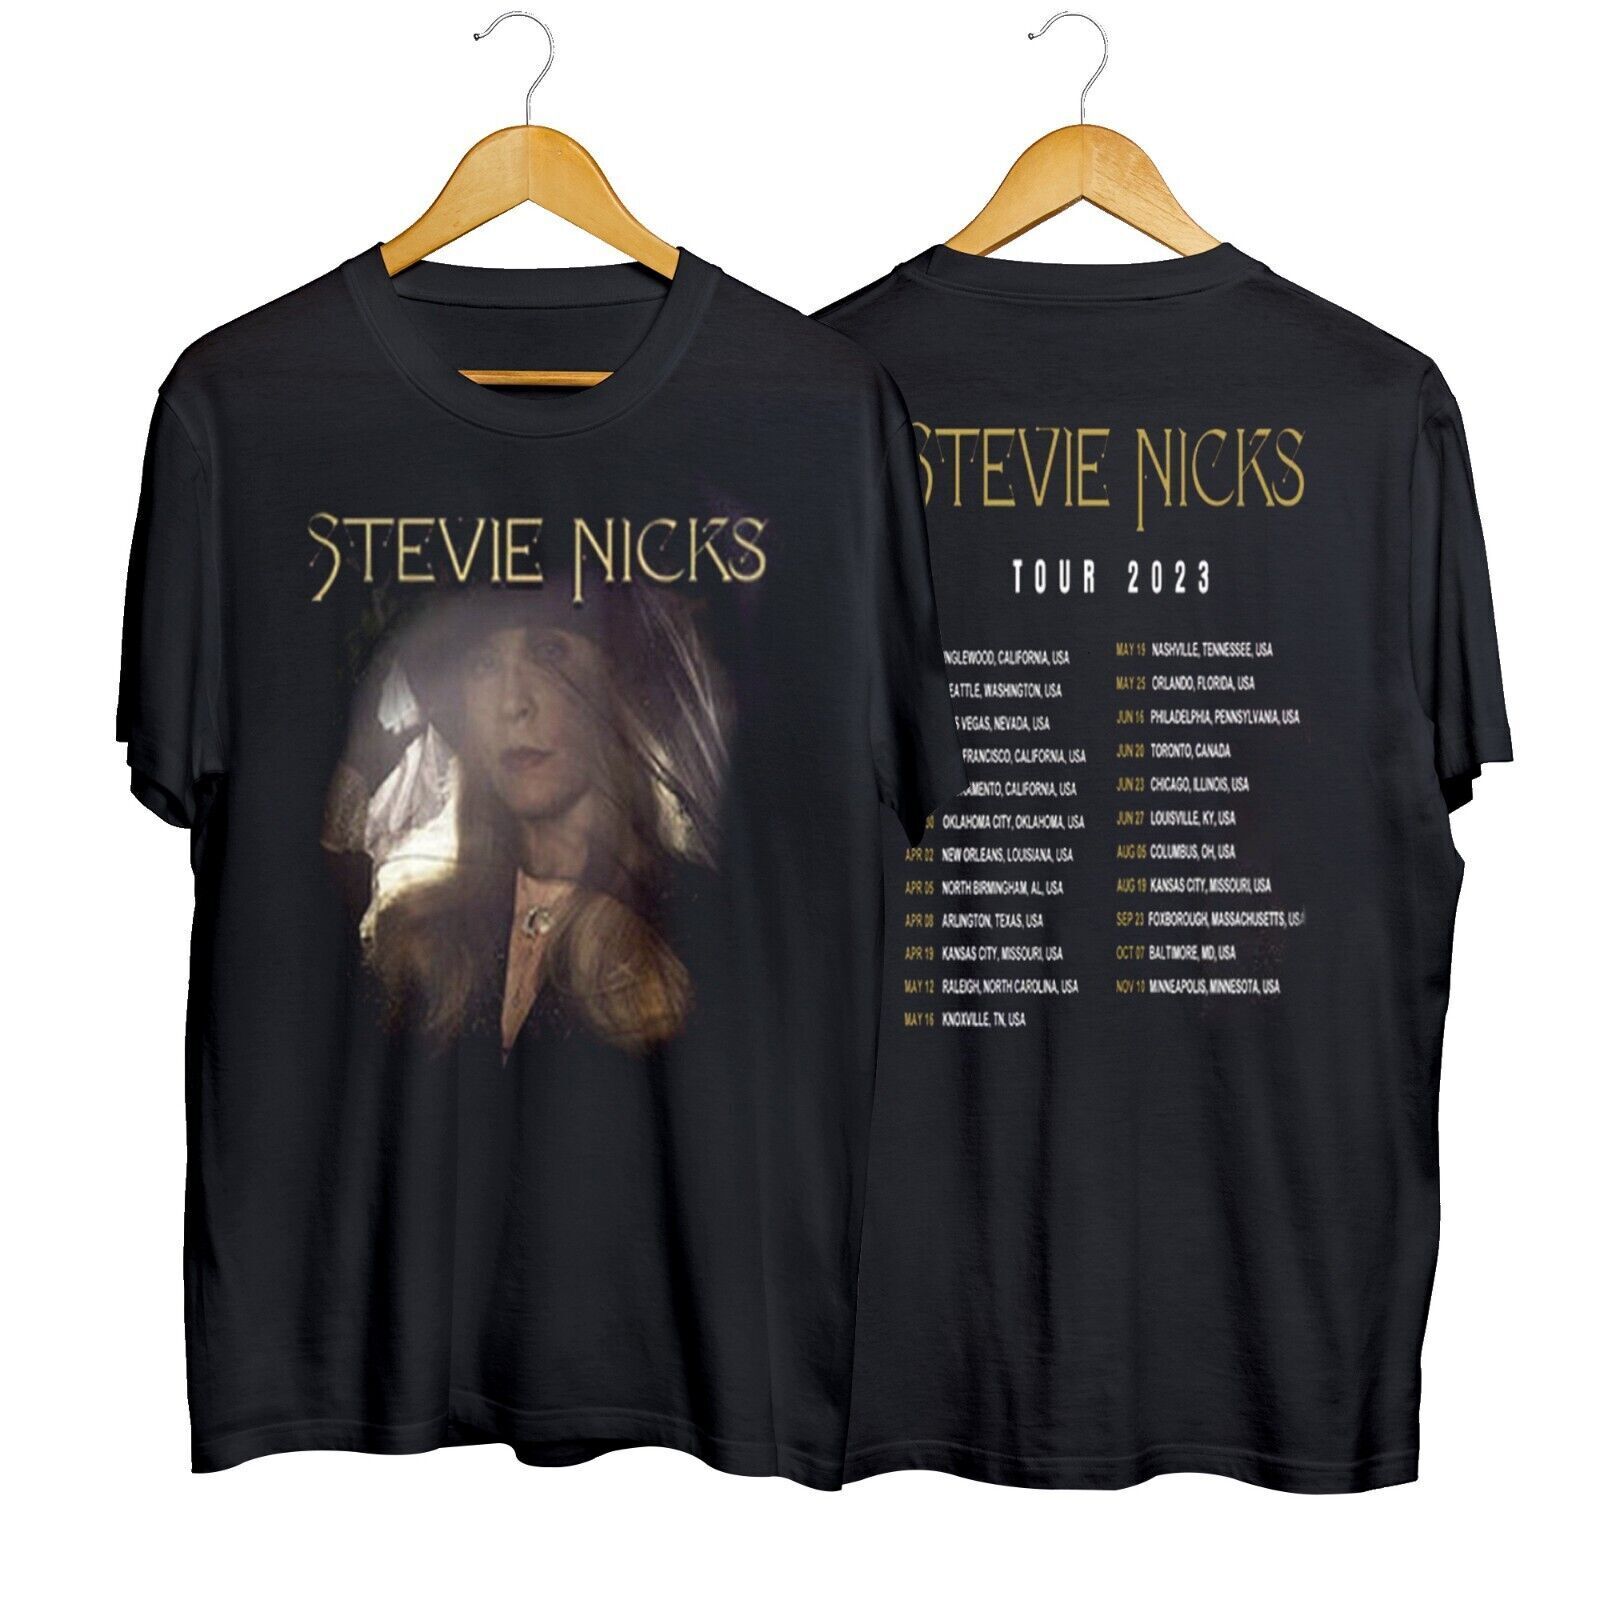 Stevie Nicks Tour 2023 Fleetwood Mac Band Tour Unisex T-shirt Shor Sleeve S-4XL